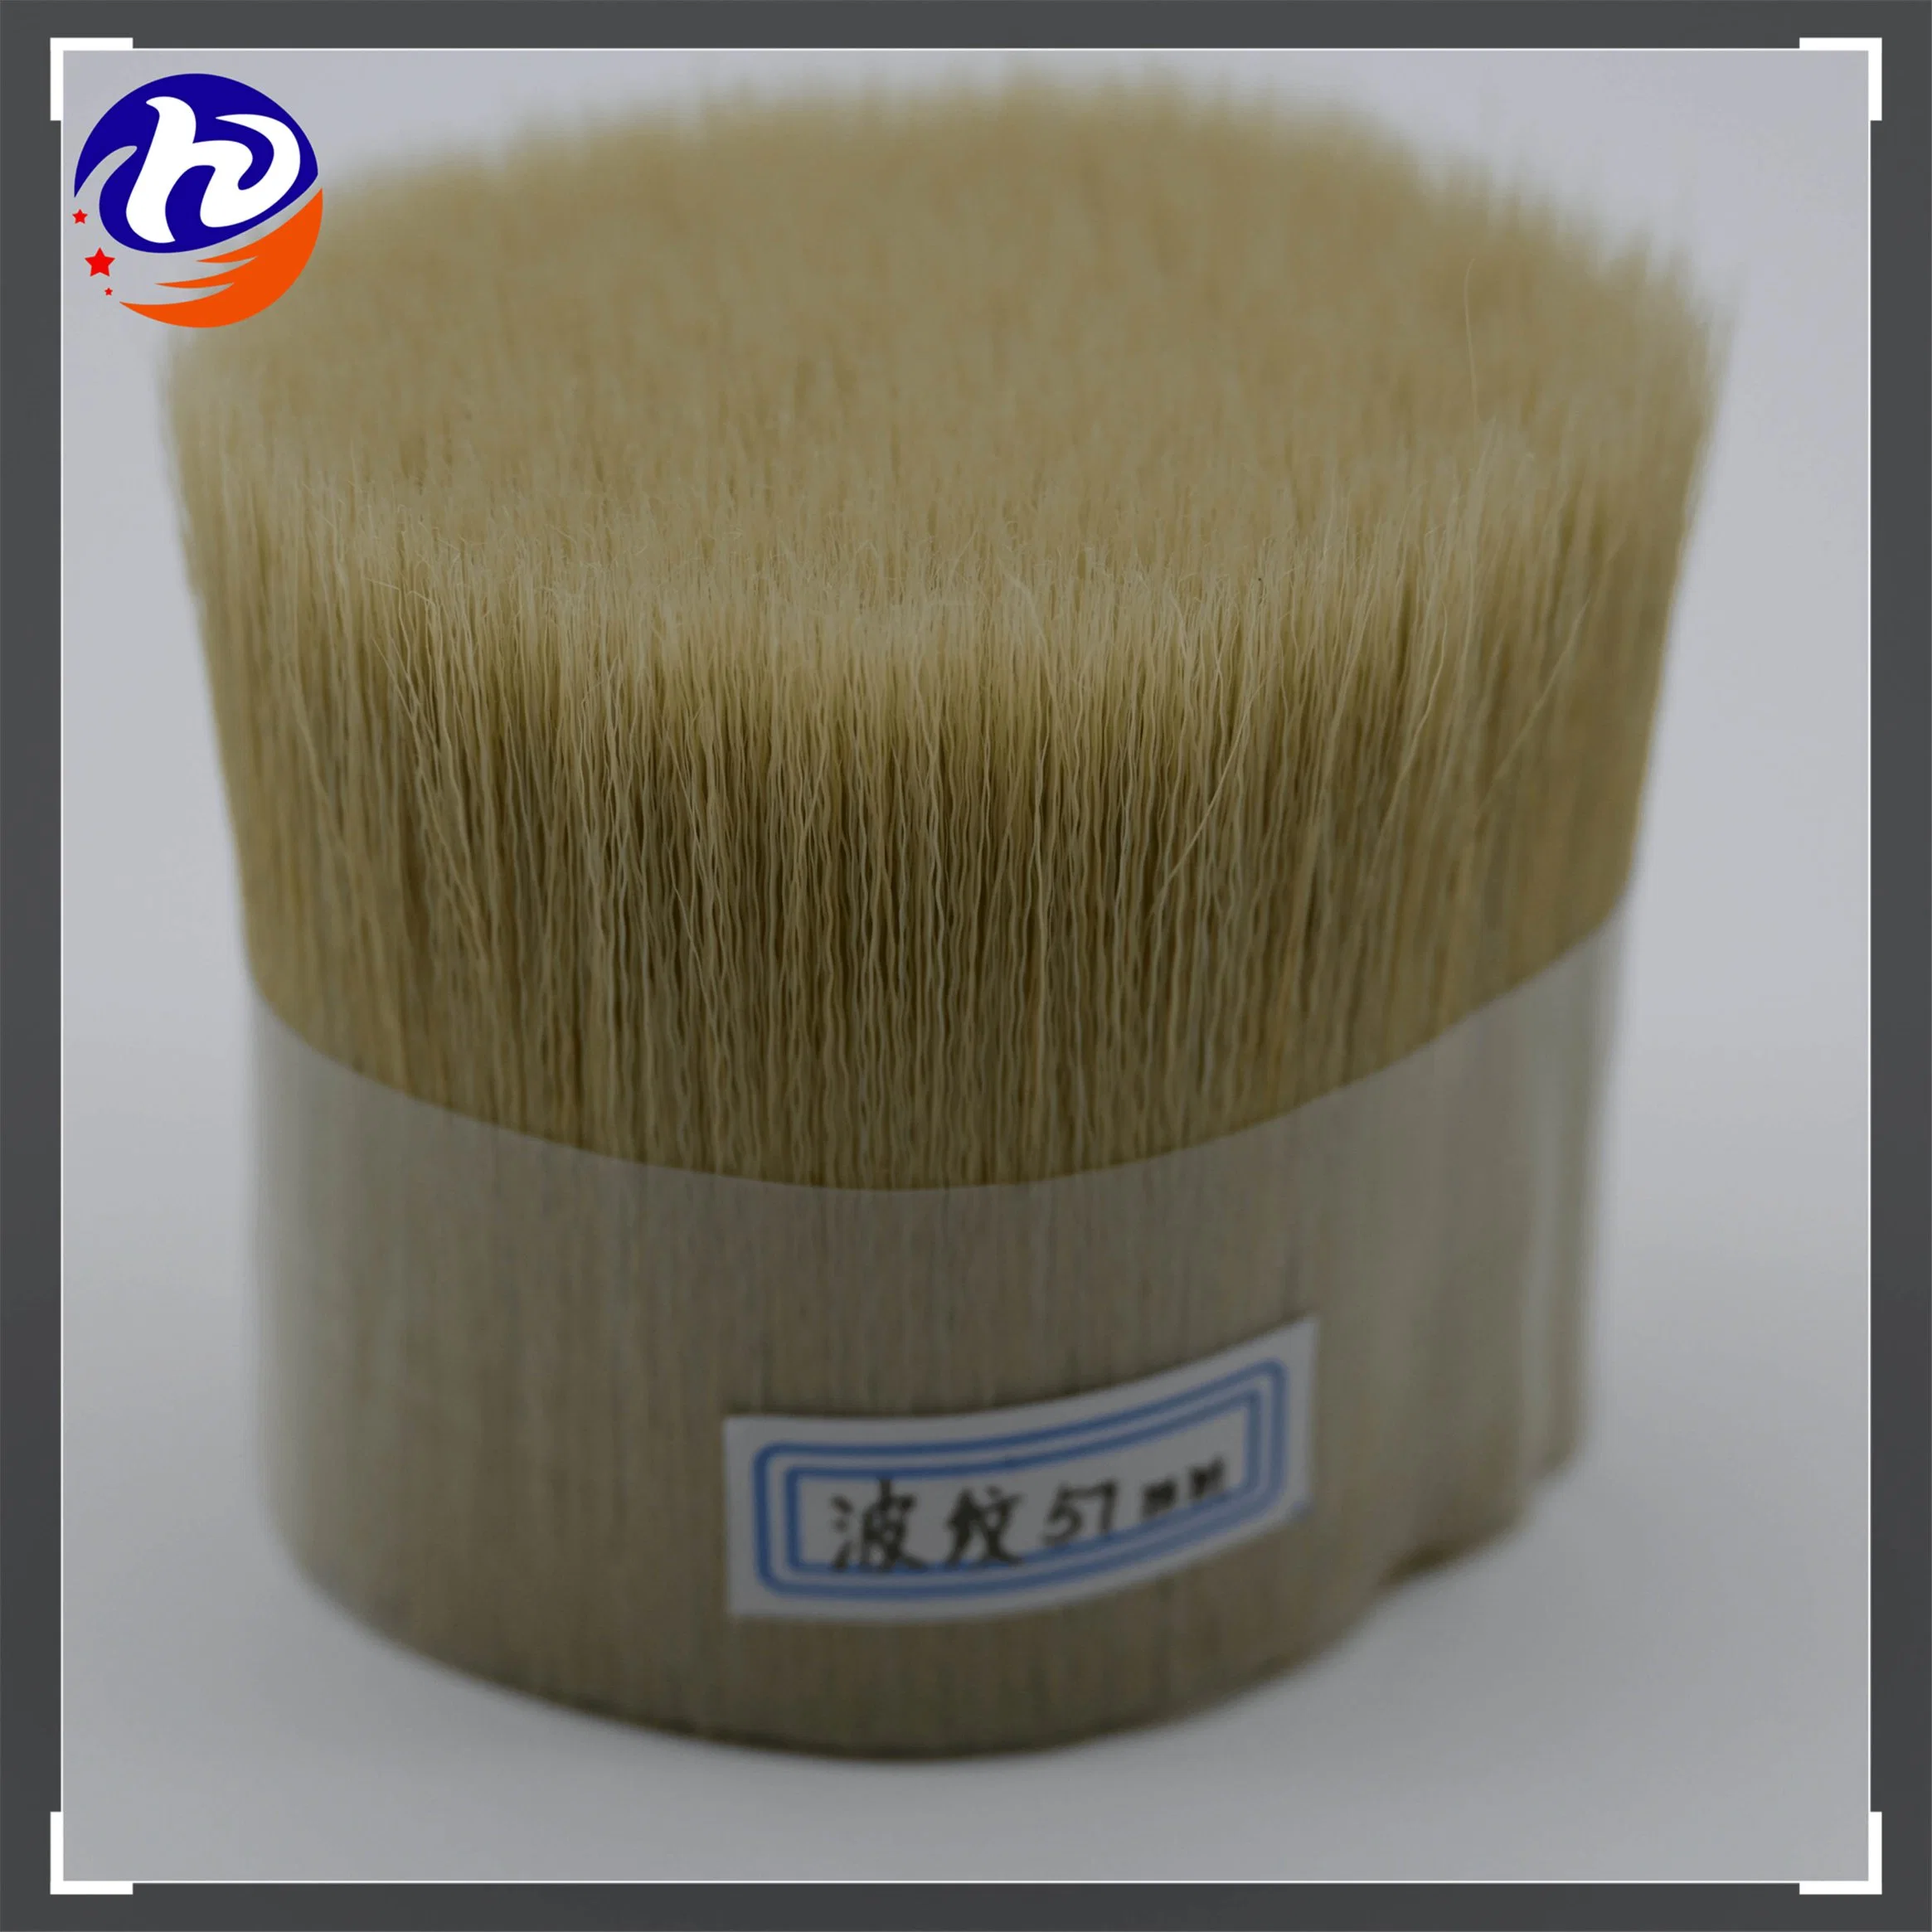 64mm Chungking Natural White Bristle for Brush